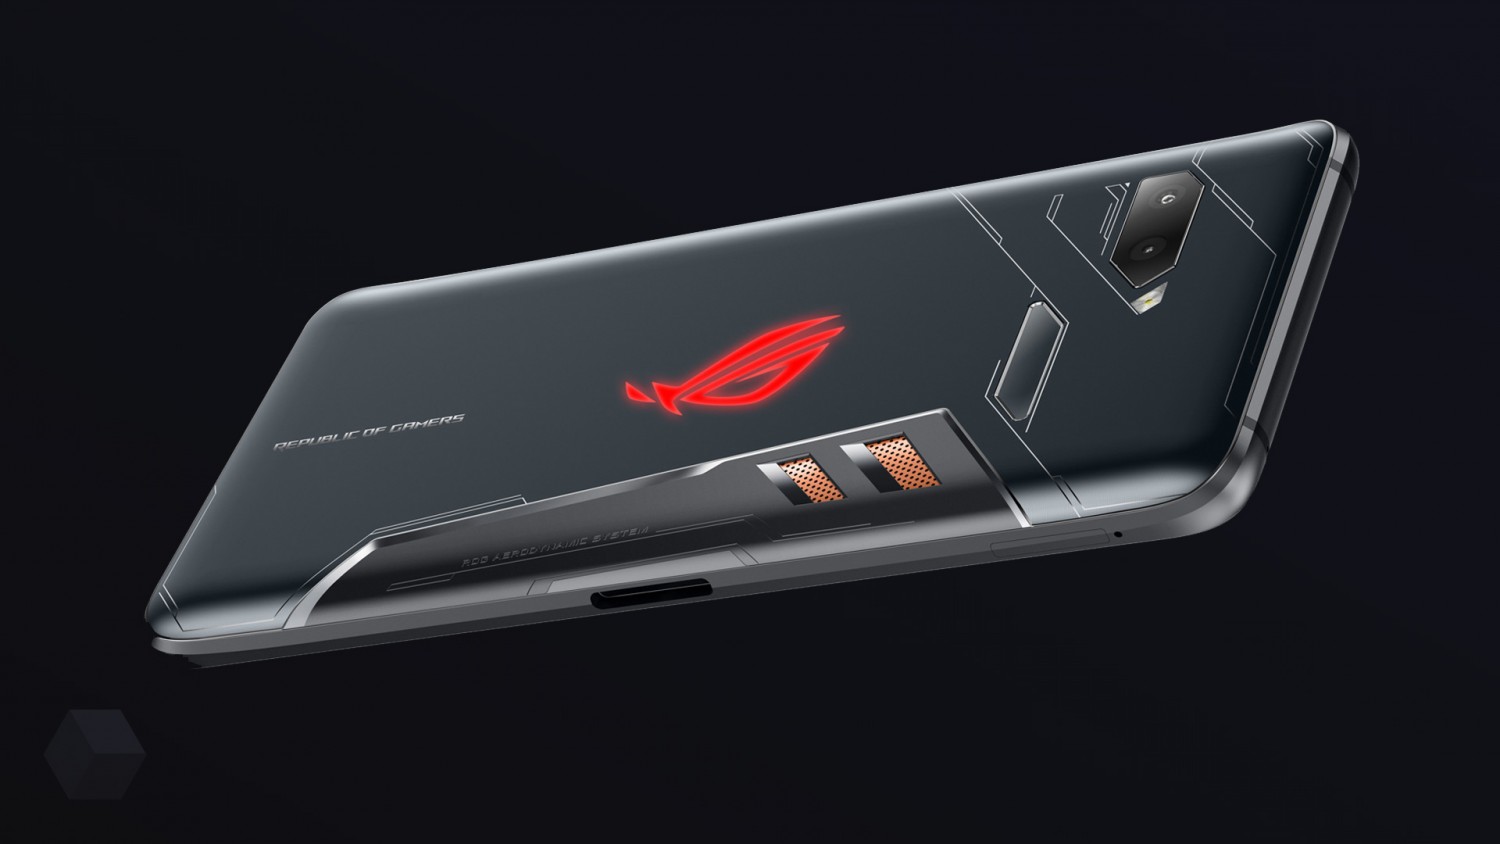 Игровой смартфон Asus ROG Phone II первым получит процессор Snapdragon 855 Plus